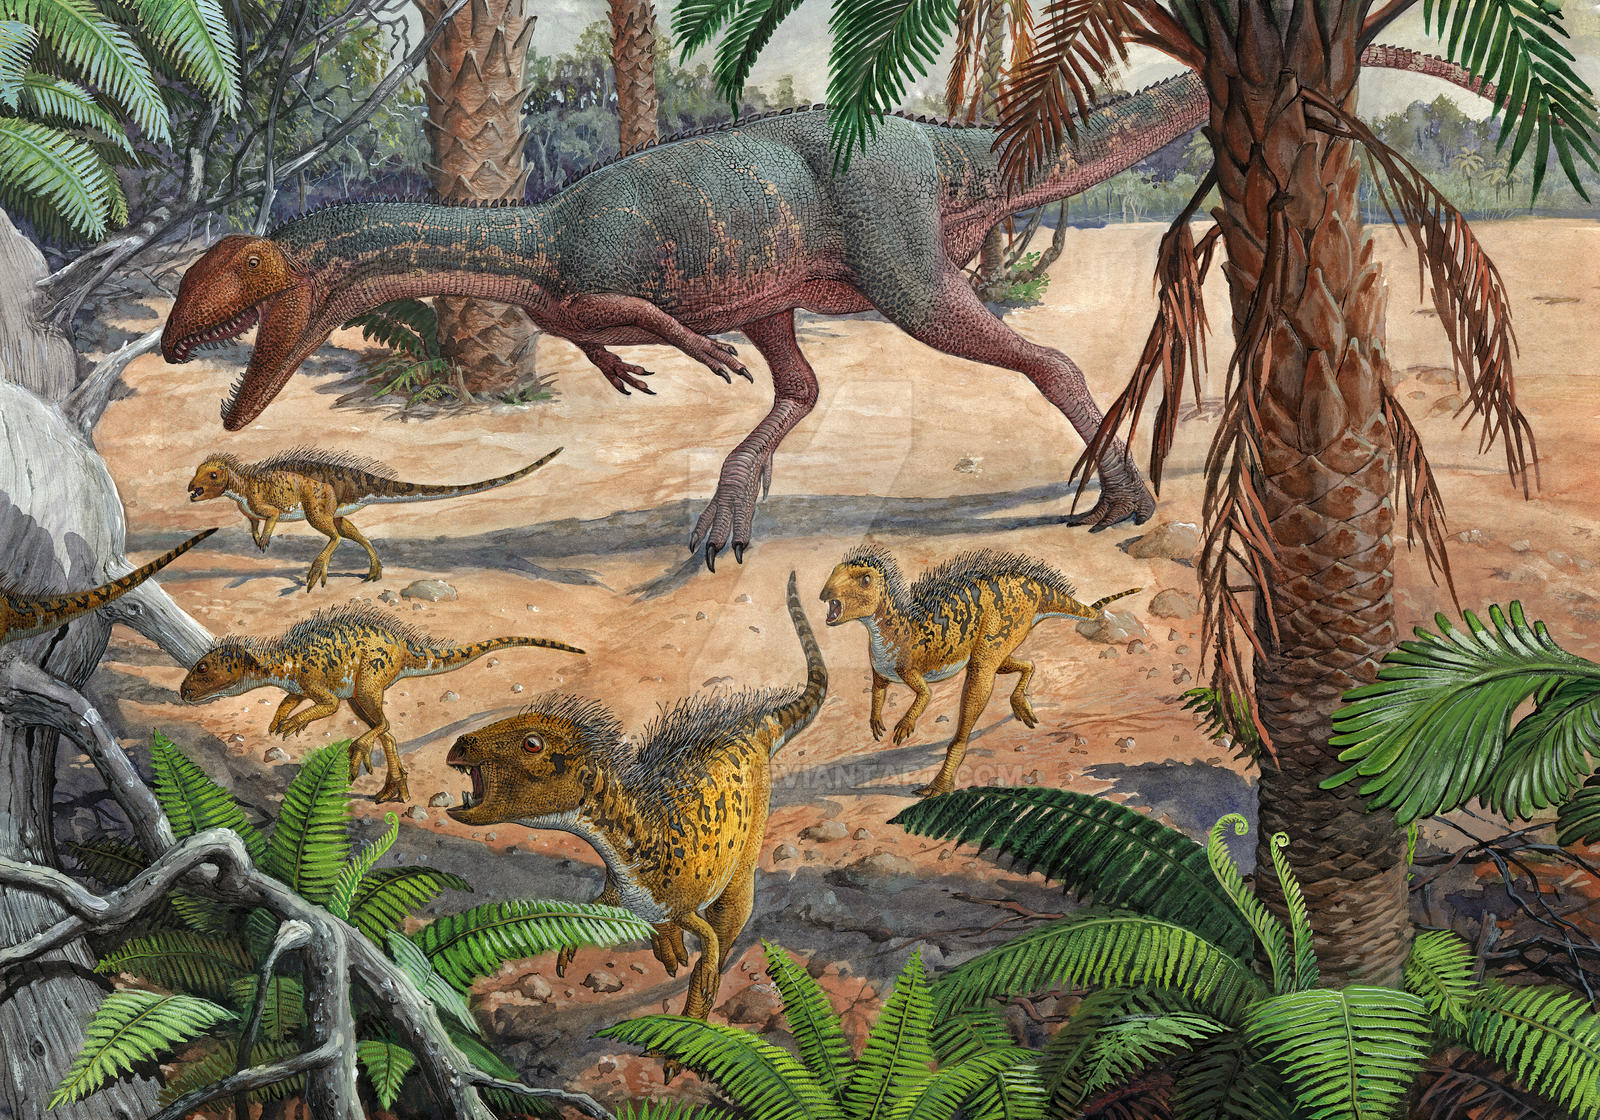 dracovenator_and_heterodontosaurs_by_atr